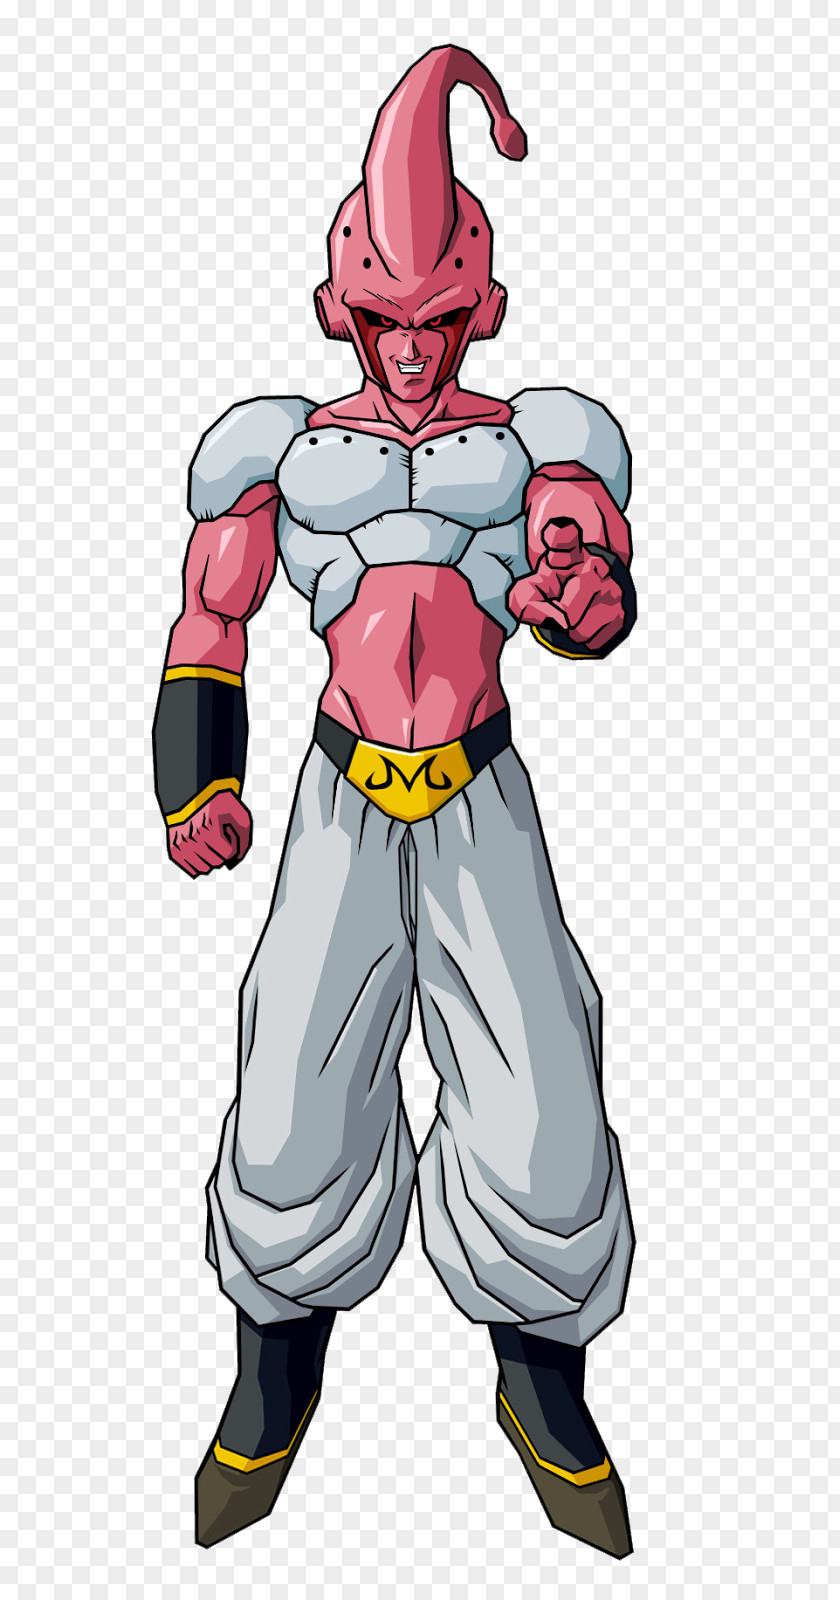 Goku Majin Buu Frieza Piccolo Vegeta PNG